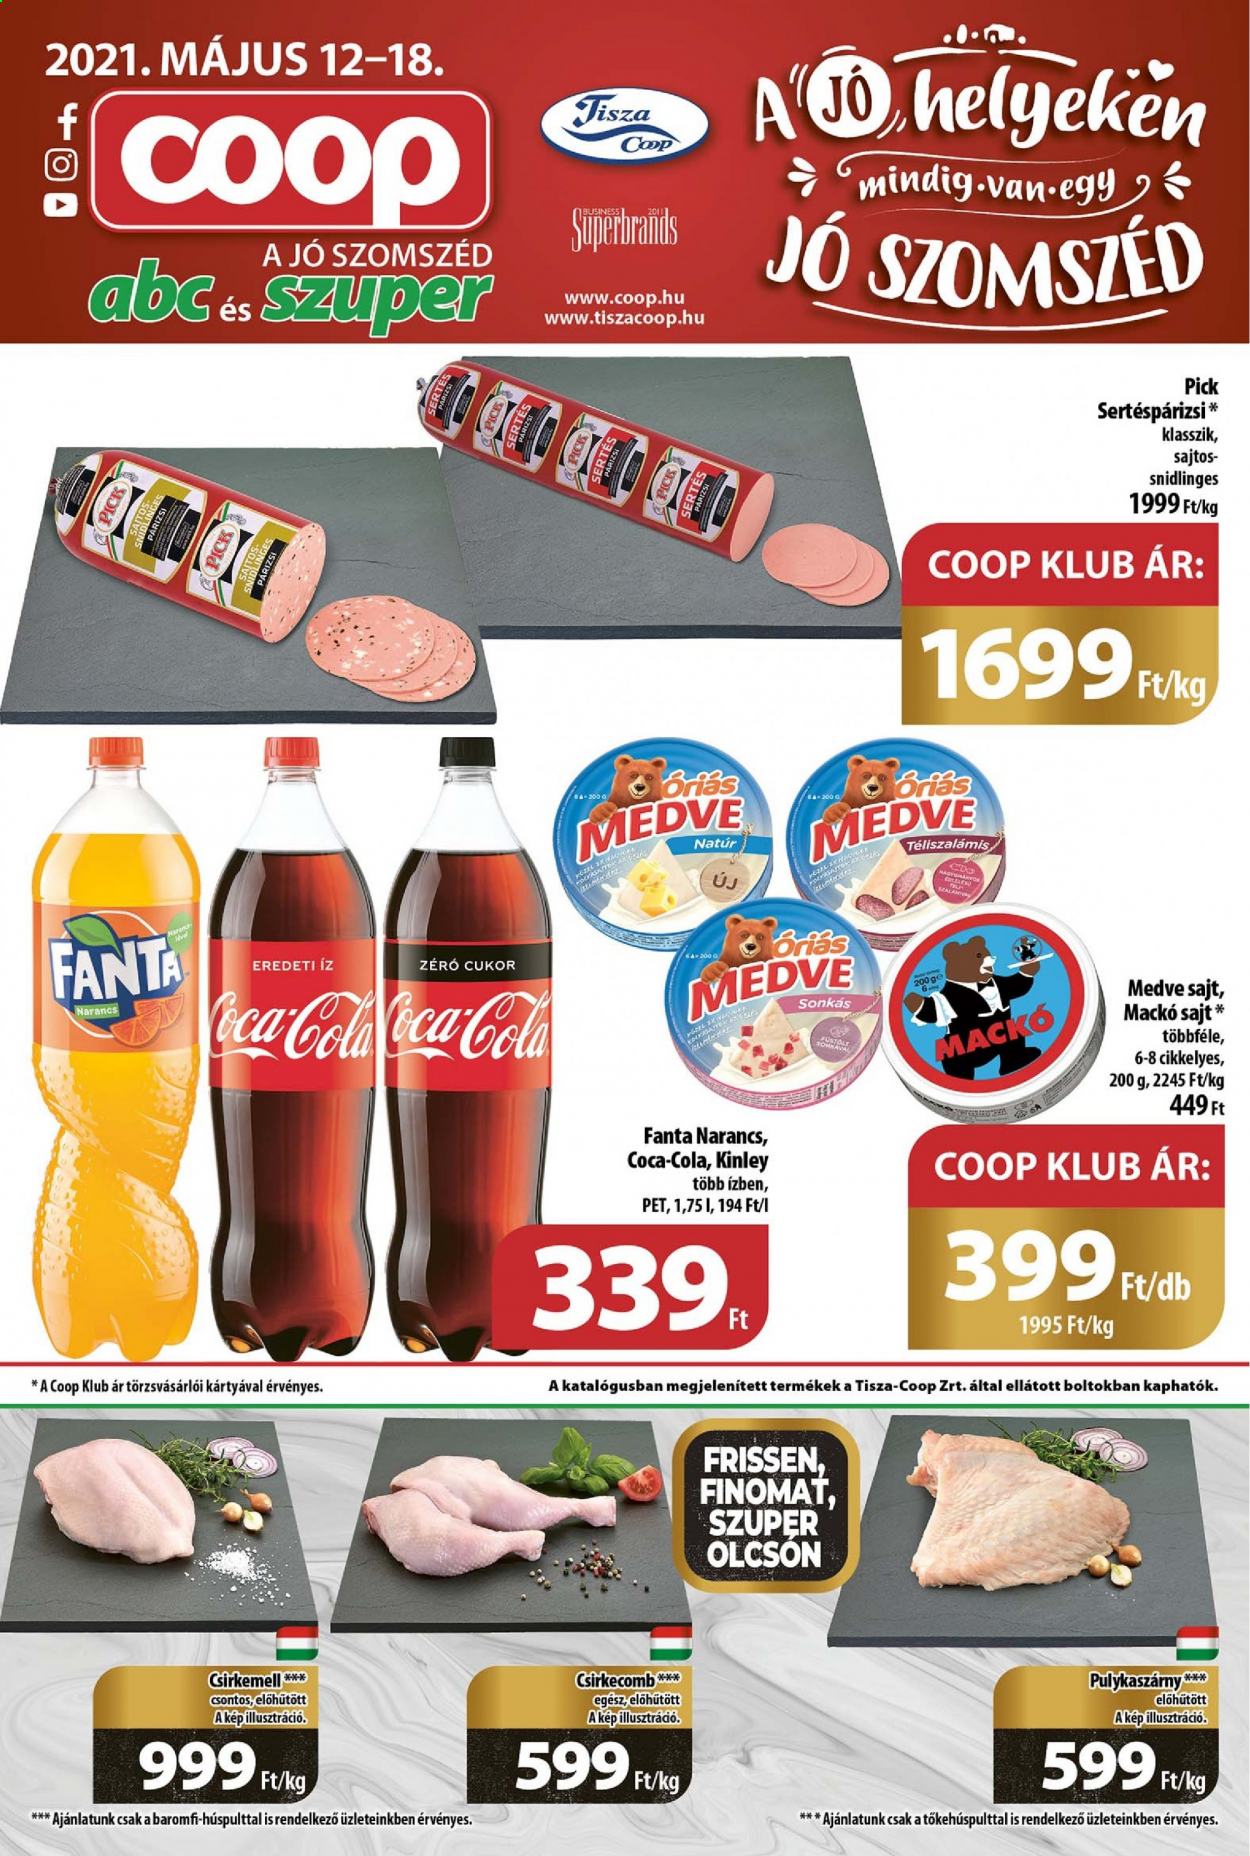 thumbnail - Coop akciós újsága  - 2021.05.12 - 2021.05.18 - Akciós termékek - csirkecomb, csirkemell, pulykahús, pulykaszárny, csirkehús, sertéspárizsi, PICK, sajt, Coca-cola, Fanta.  1. Oldal